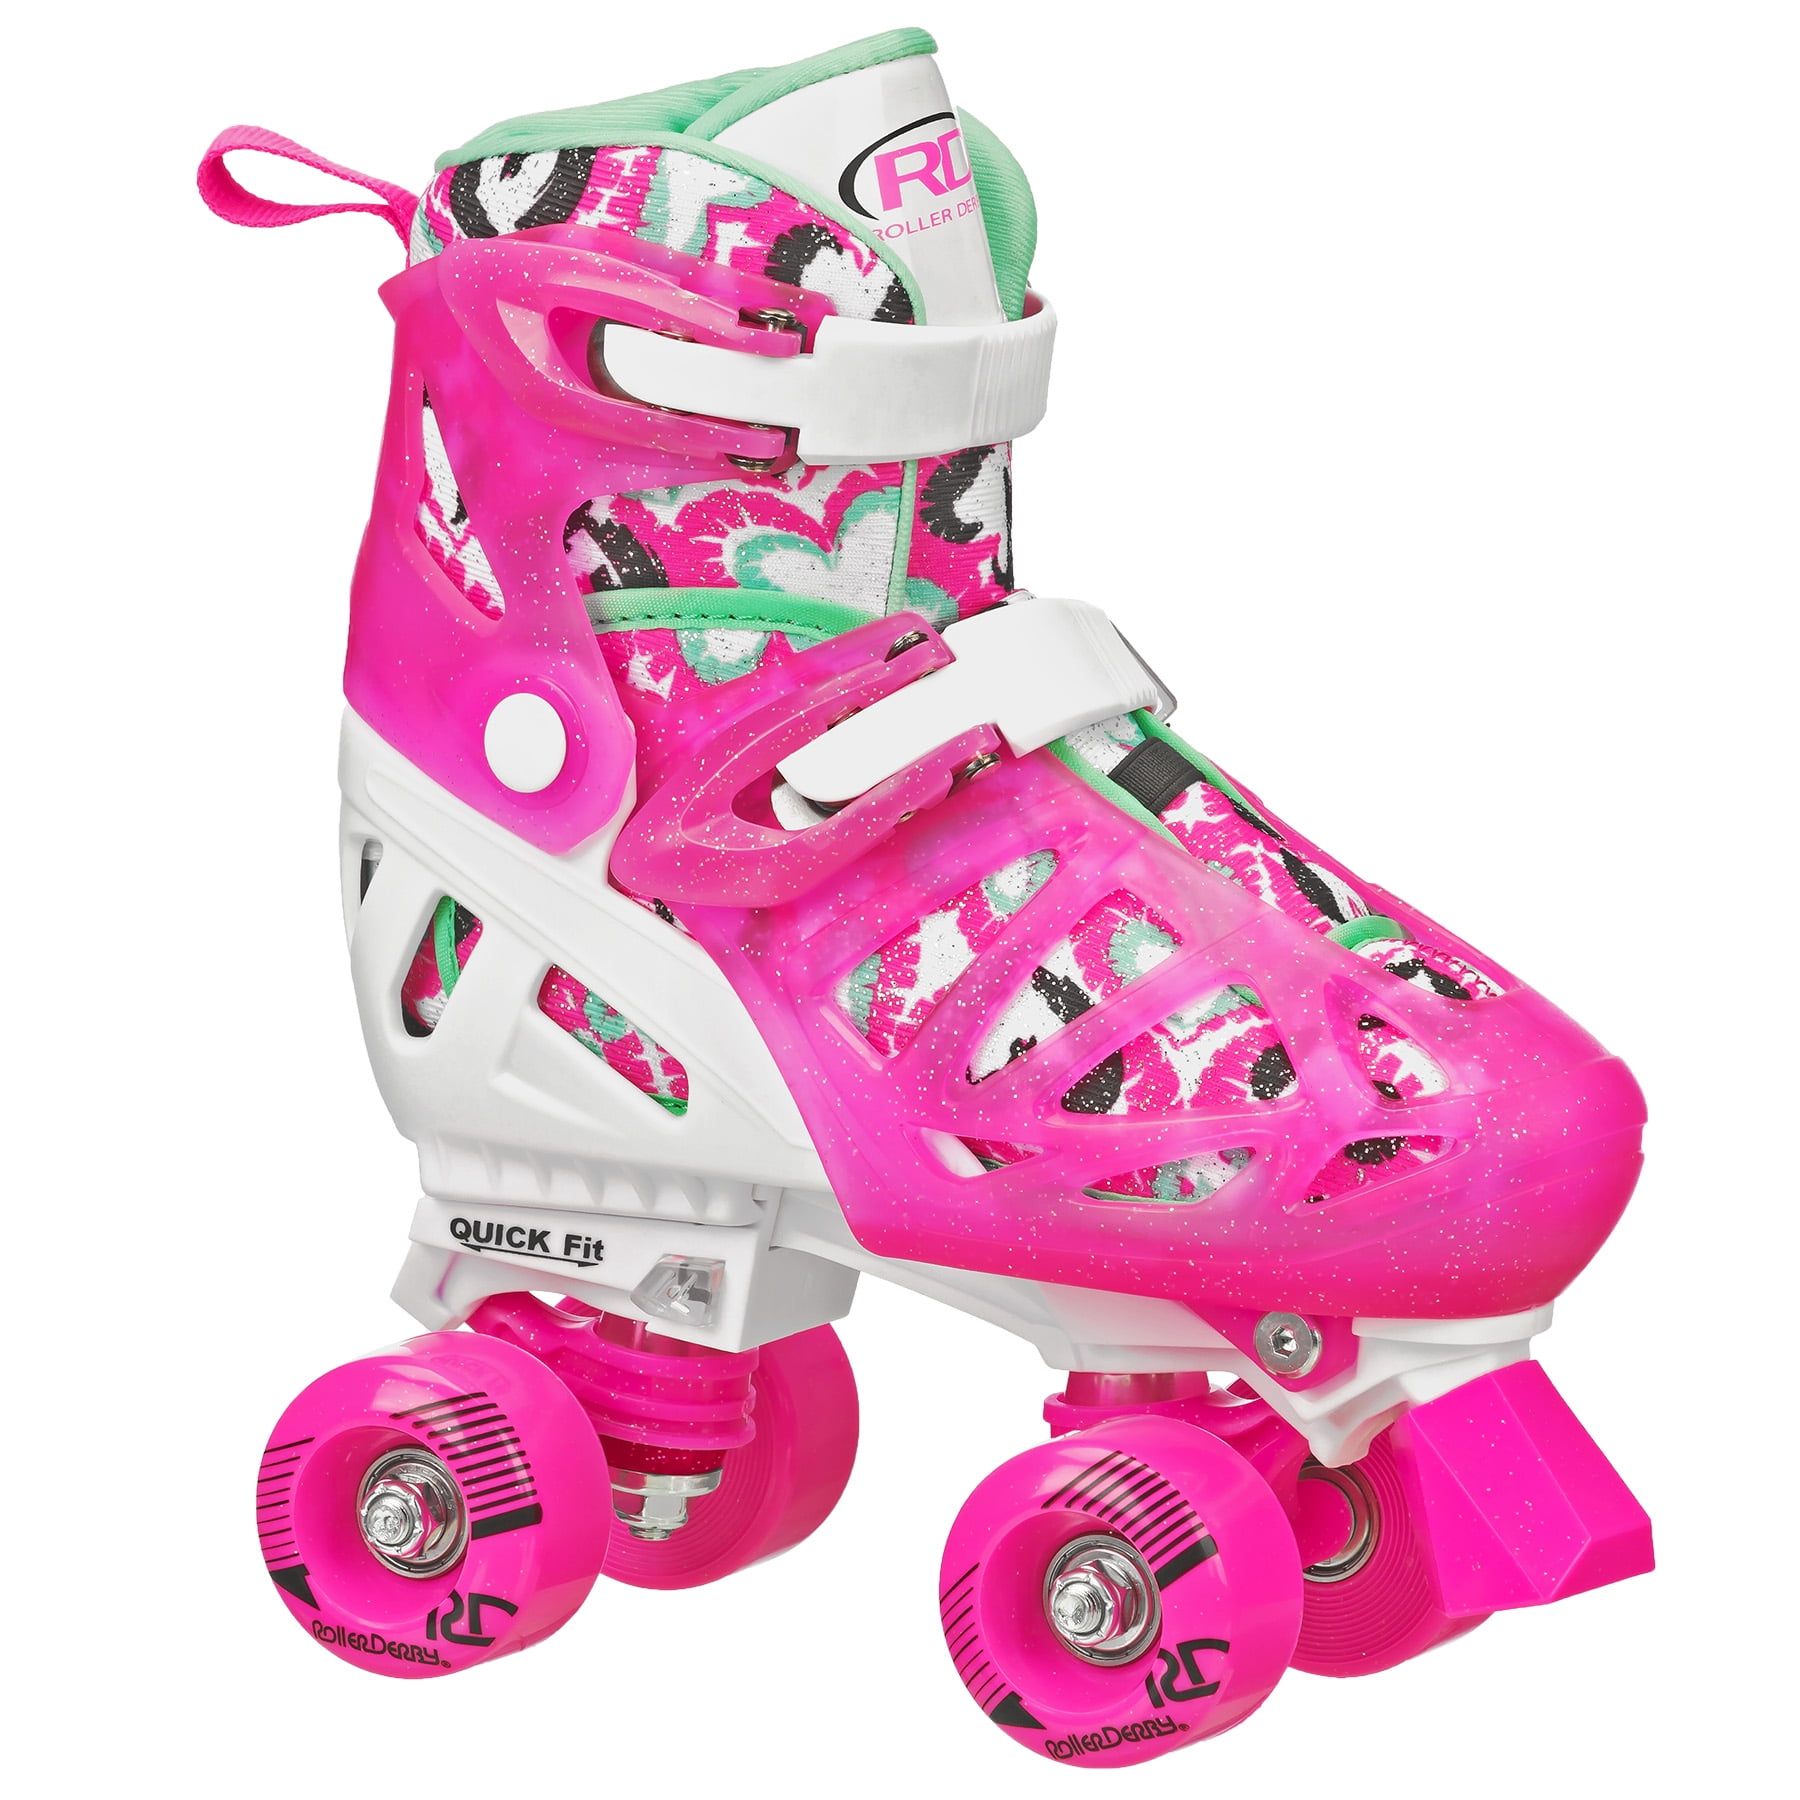 Details about   Roller Derby Girls Adjustable High Top Quad Skates by Roller Derby 